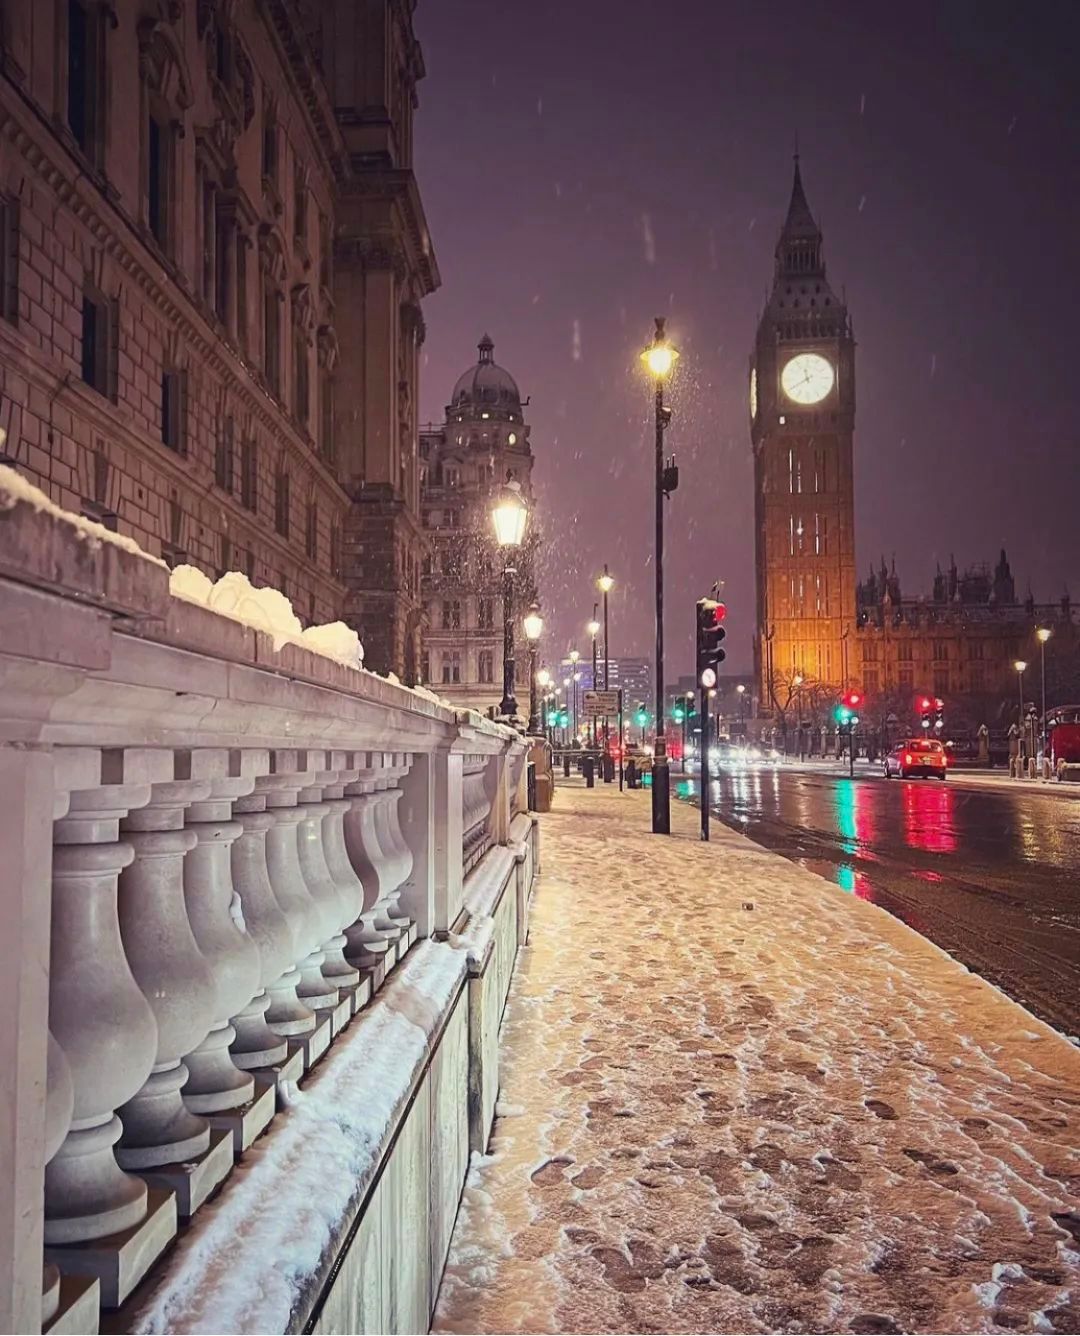 伦敦下雪了,秒变白色童话世界!快来看雪景啦!